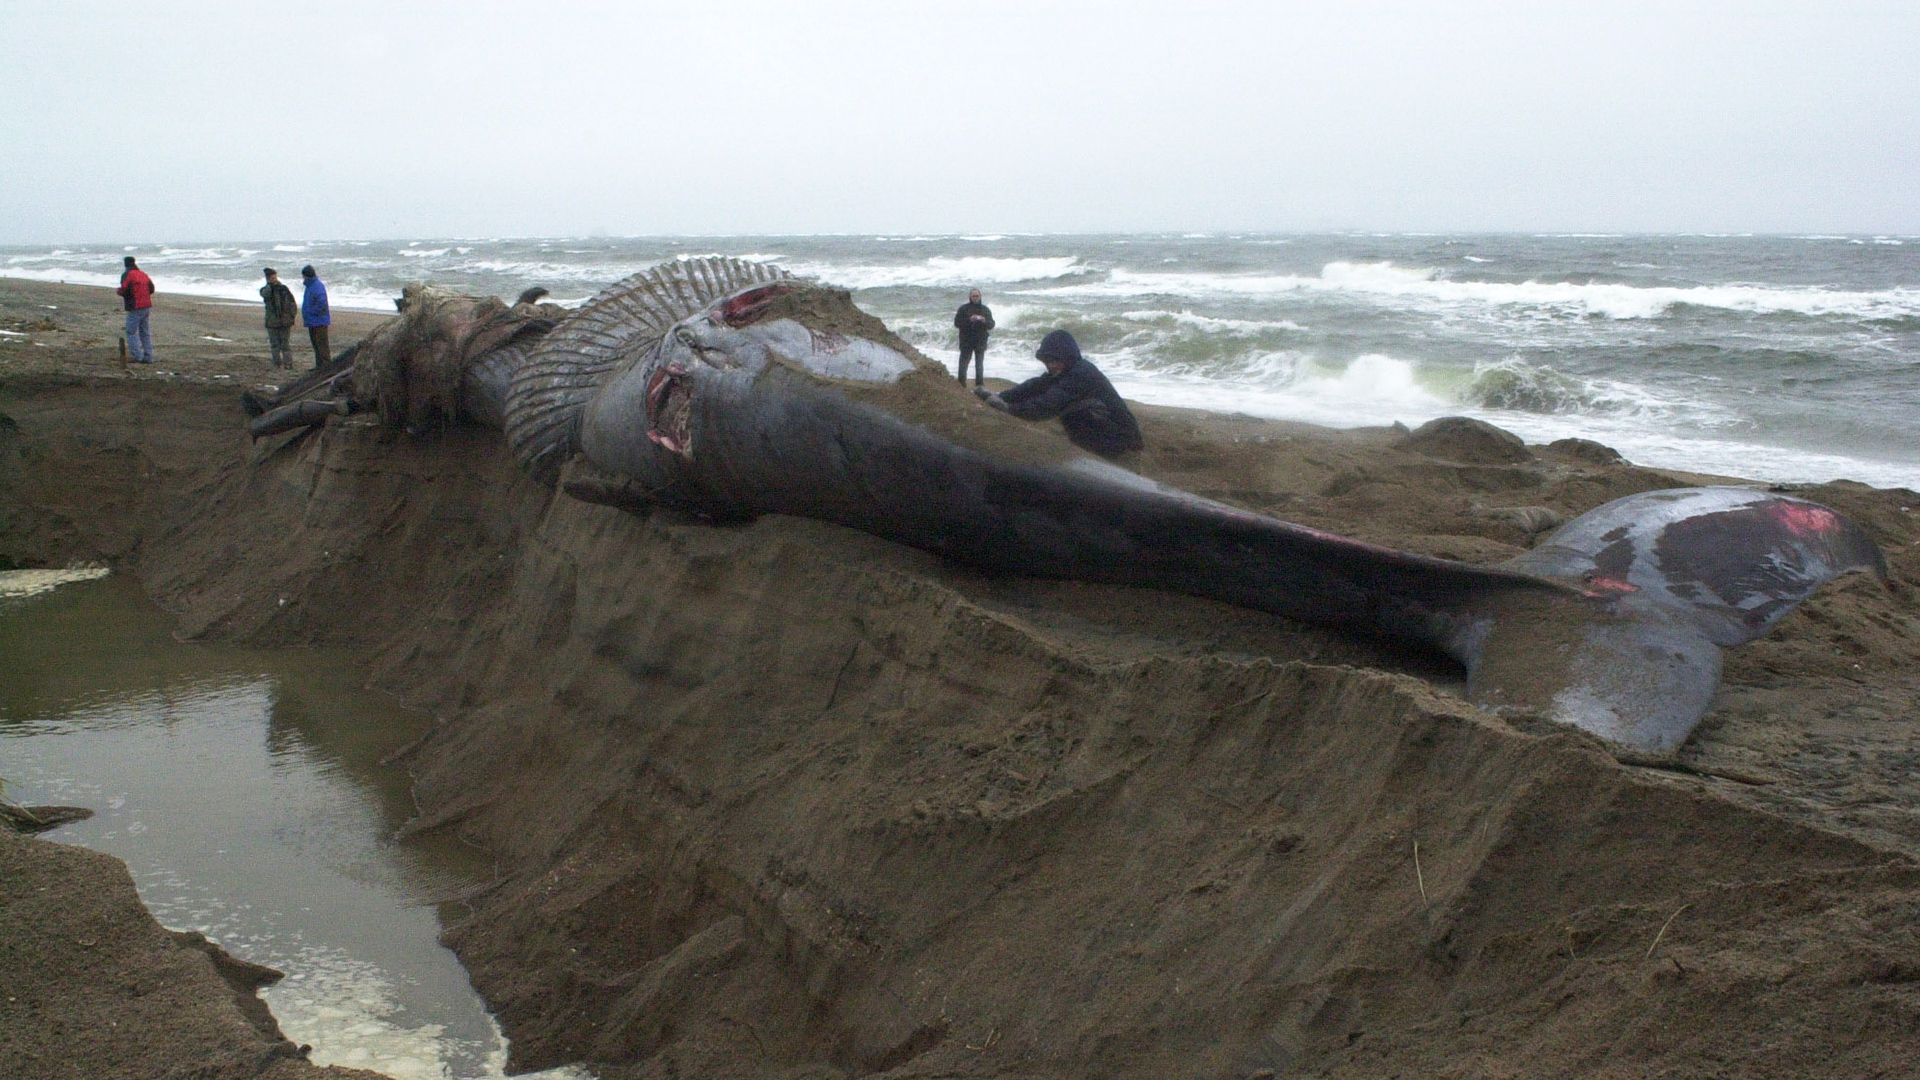 On voit la baleine sur le bord d’un immense trou qui a été creusé dans le sable.